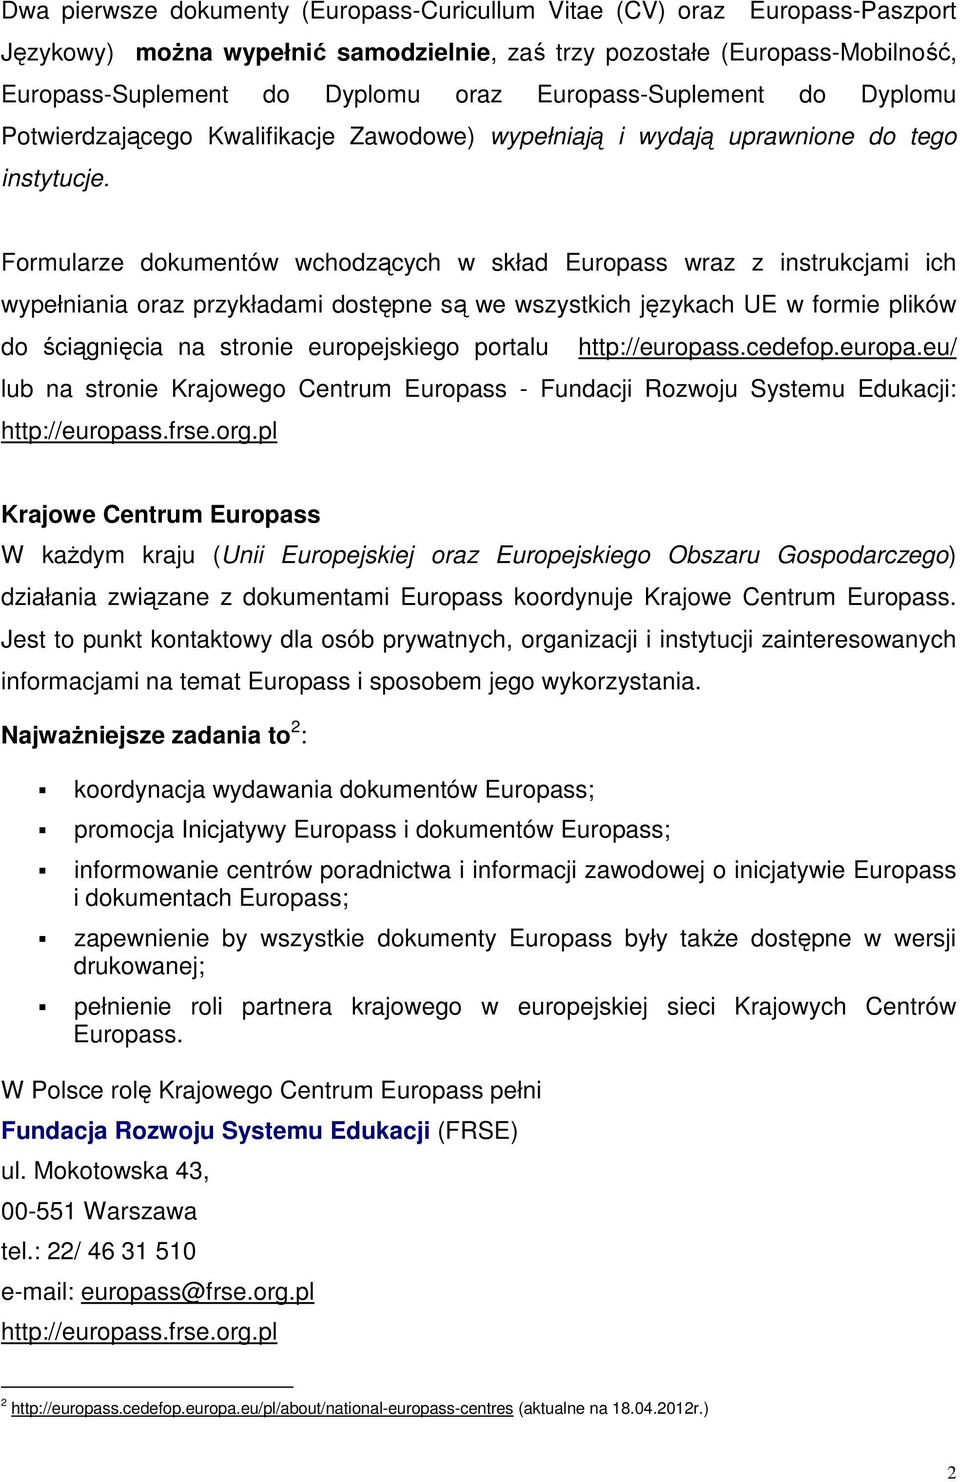 Formularze dokumentów wchodzących w skład Europass wraz z instrukcjami ich wypełniania oraz przykładami dostępne są we wszystkich językach UE w formie plików do ściągnięcia na stronie europejskiego